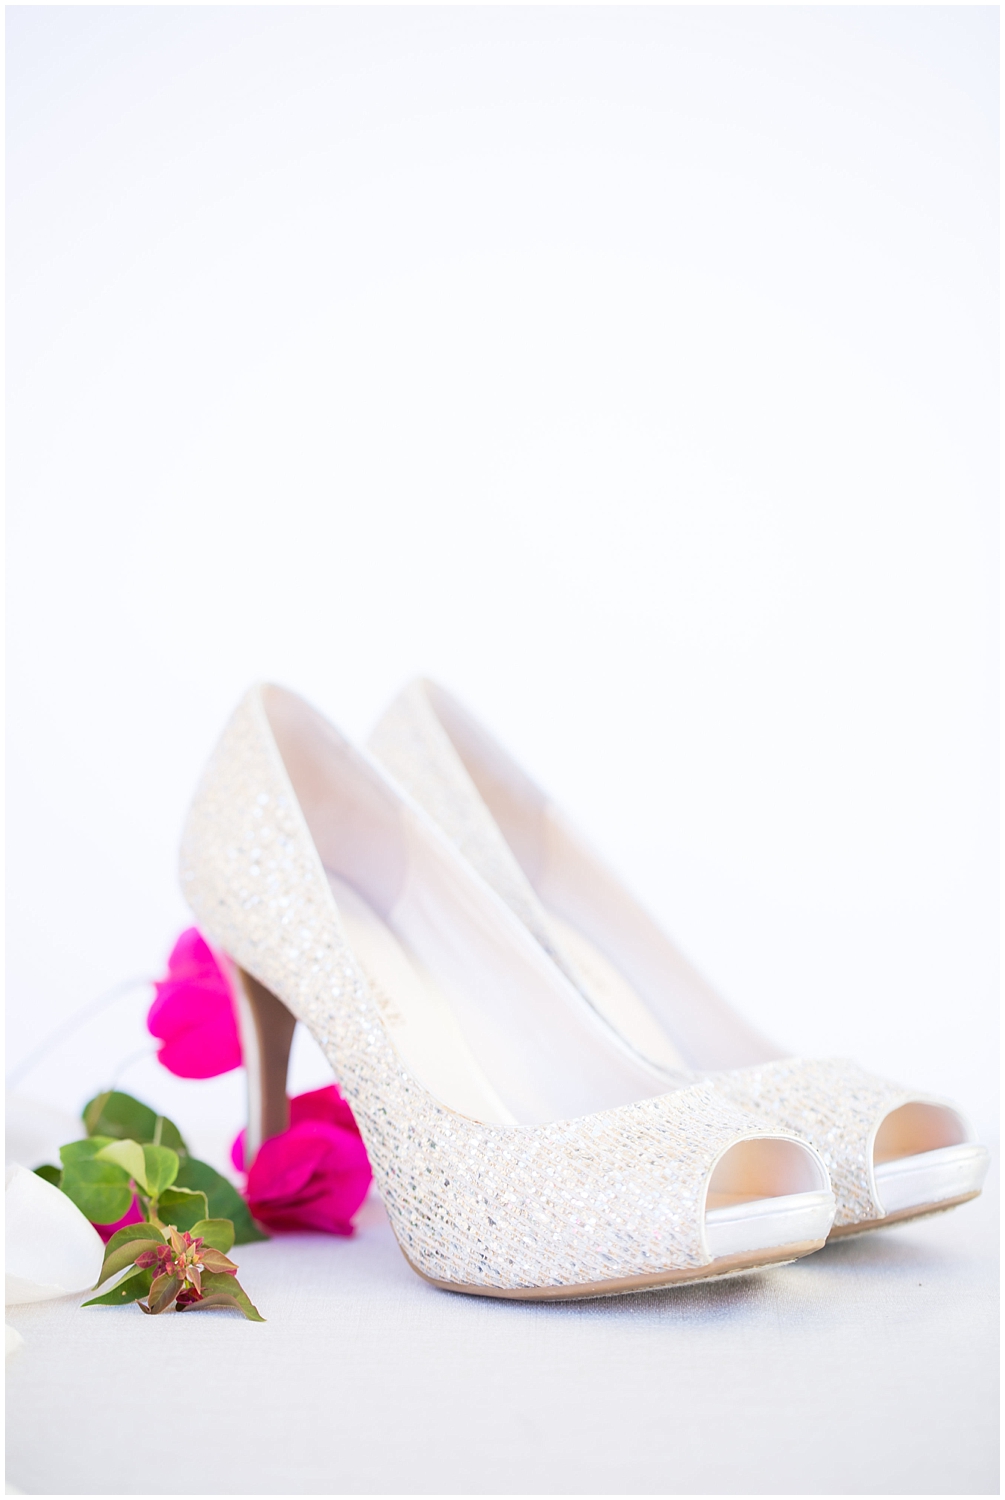 Bride high heels